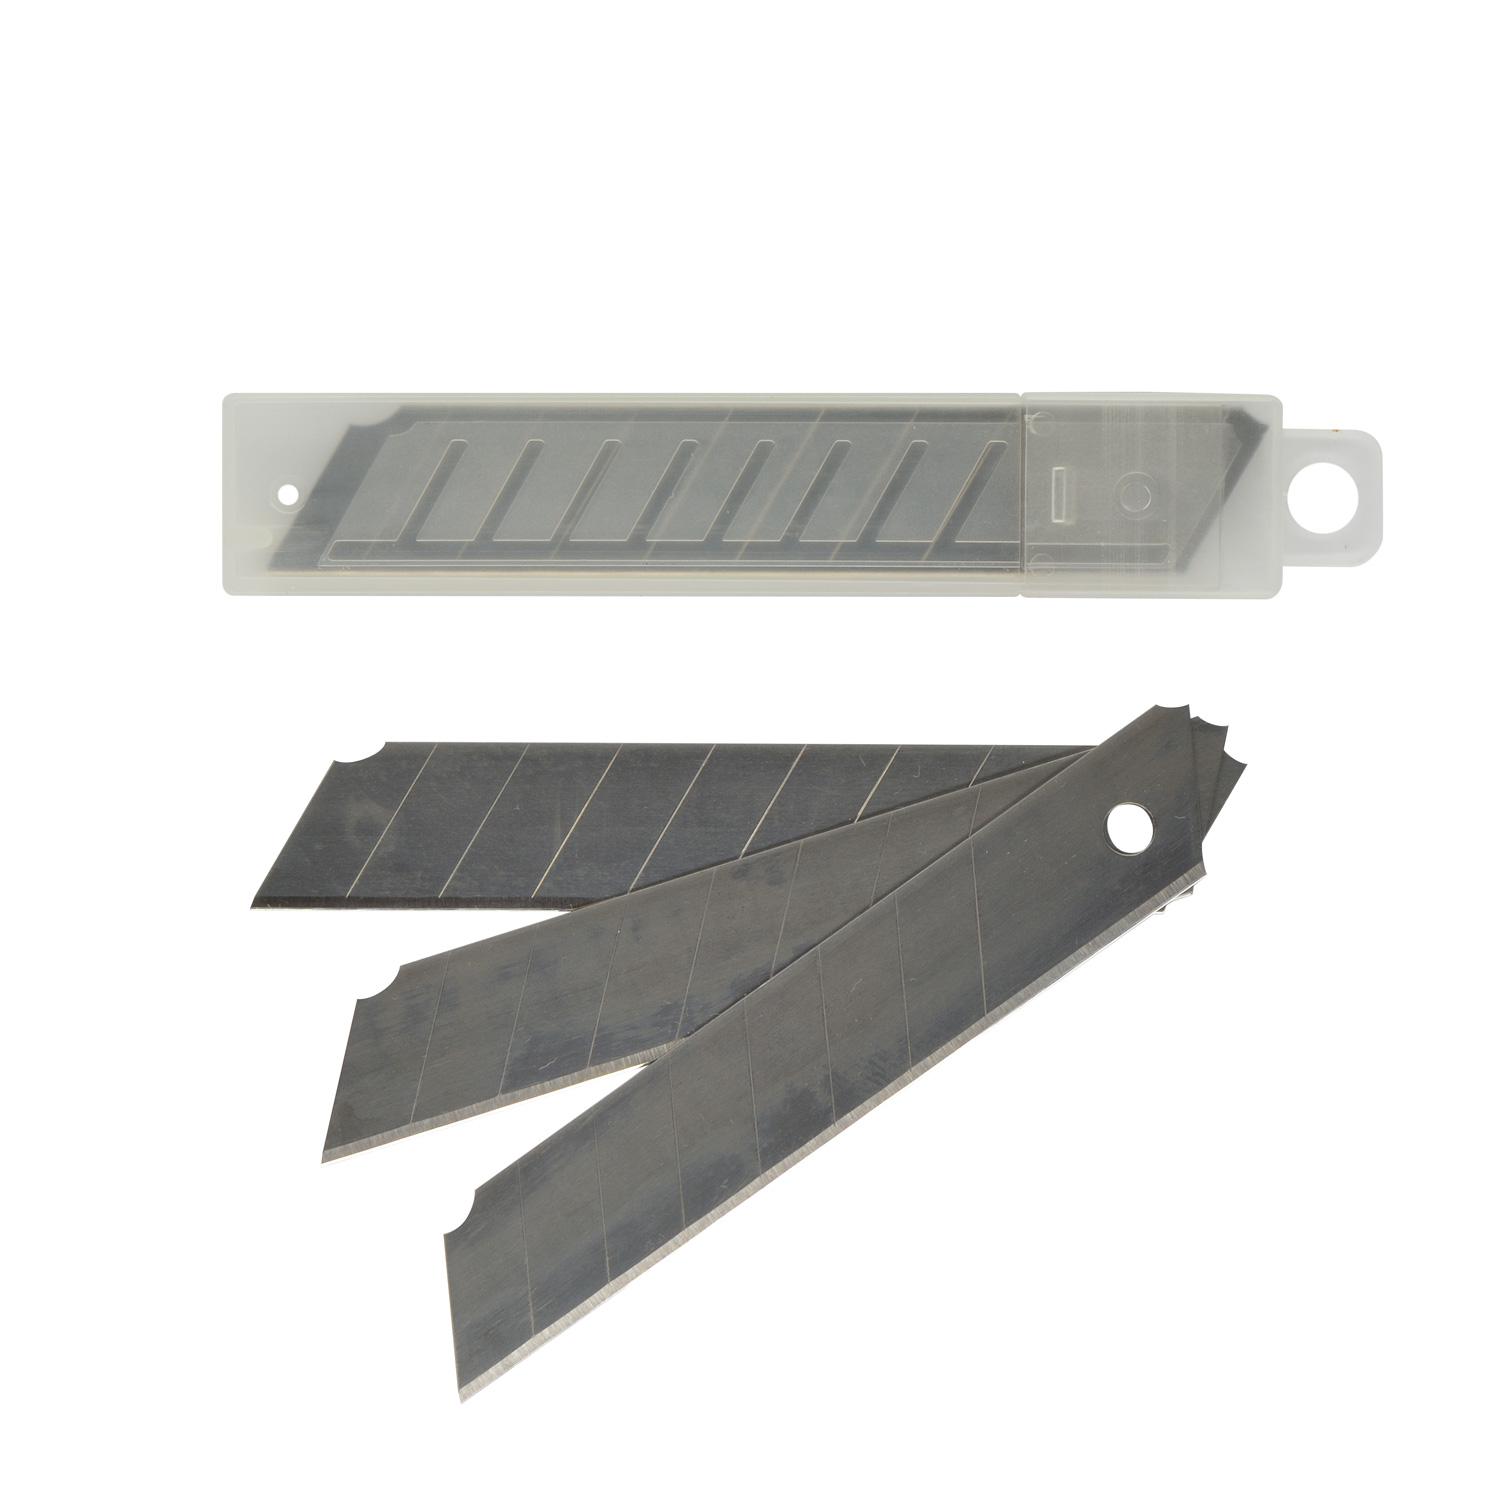 Лезвия запасные для ножей. Лезвия для ножа Systec 18 мм, 10 шт. Santool лезвия для ножа 18мм. Лезвия для ножа 18 мм (20/ 400) vertextools. Лезвия для канцелярского ножа 18 мм.